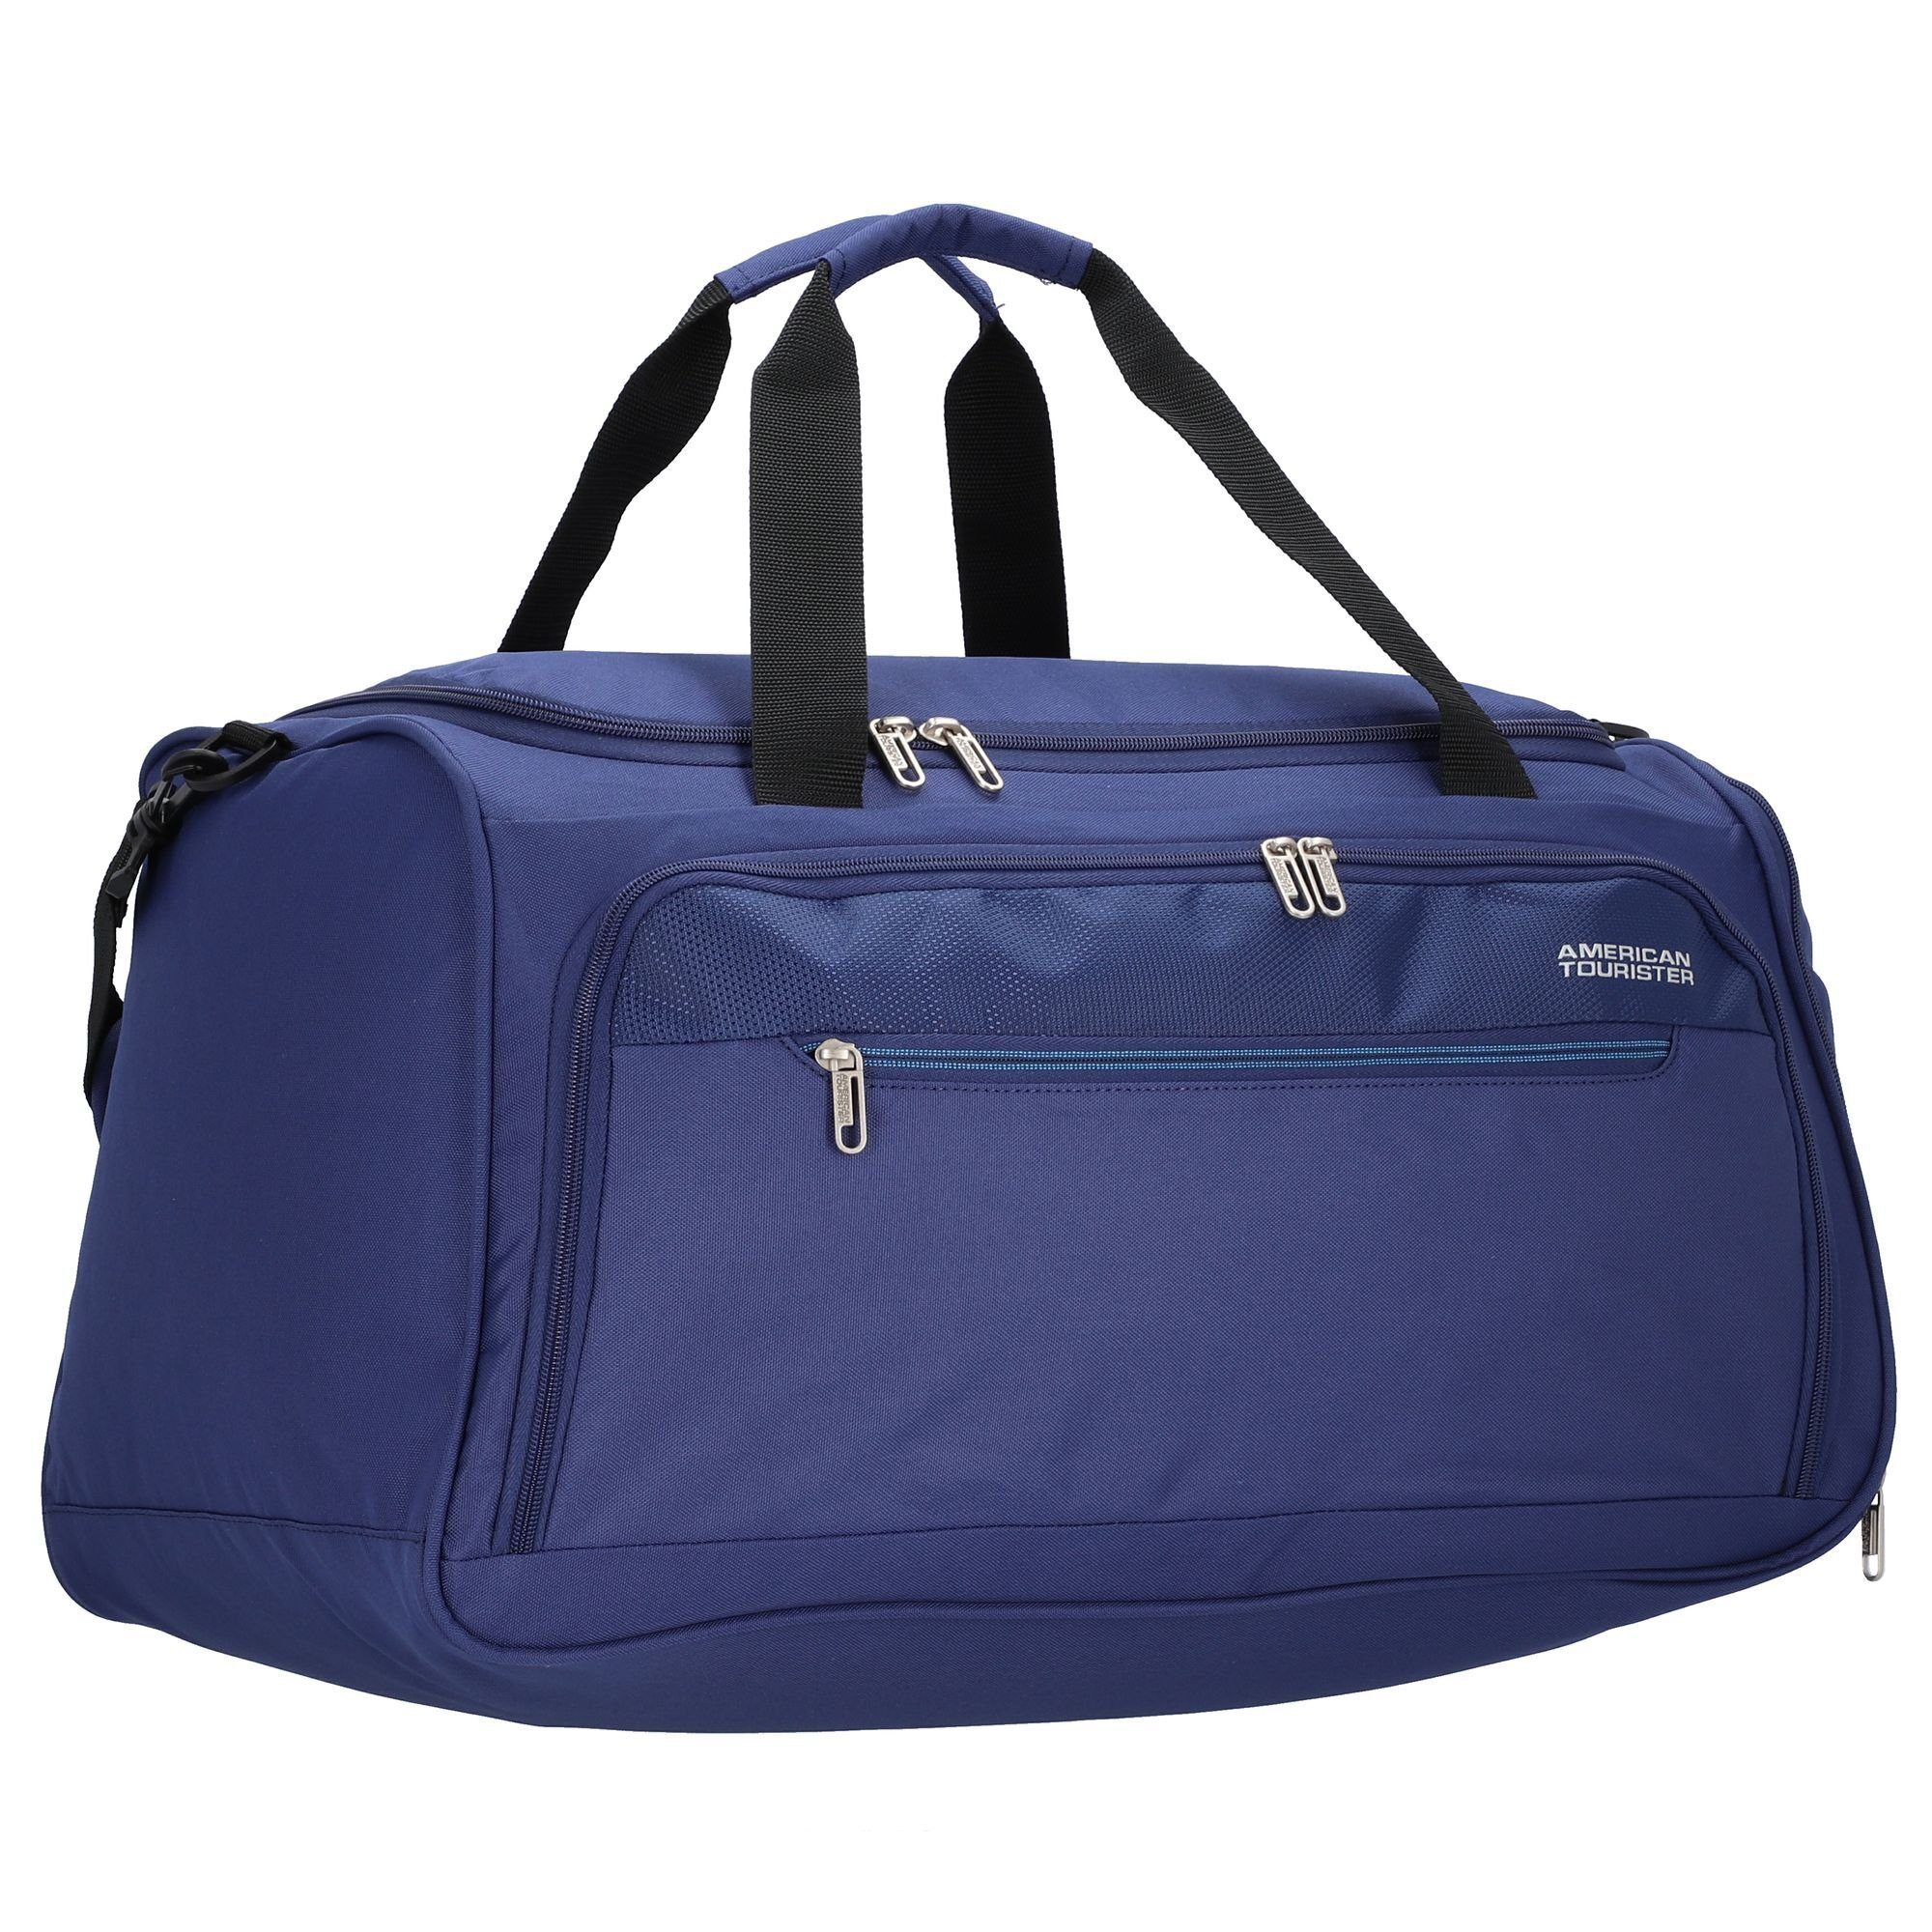 American Ausstattungen: Reisetasche steckbar, Polyester, Tourister® auf Trolley Netzfach Wave, Heat